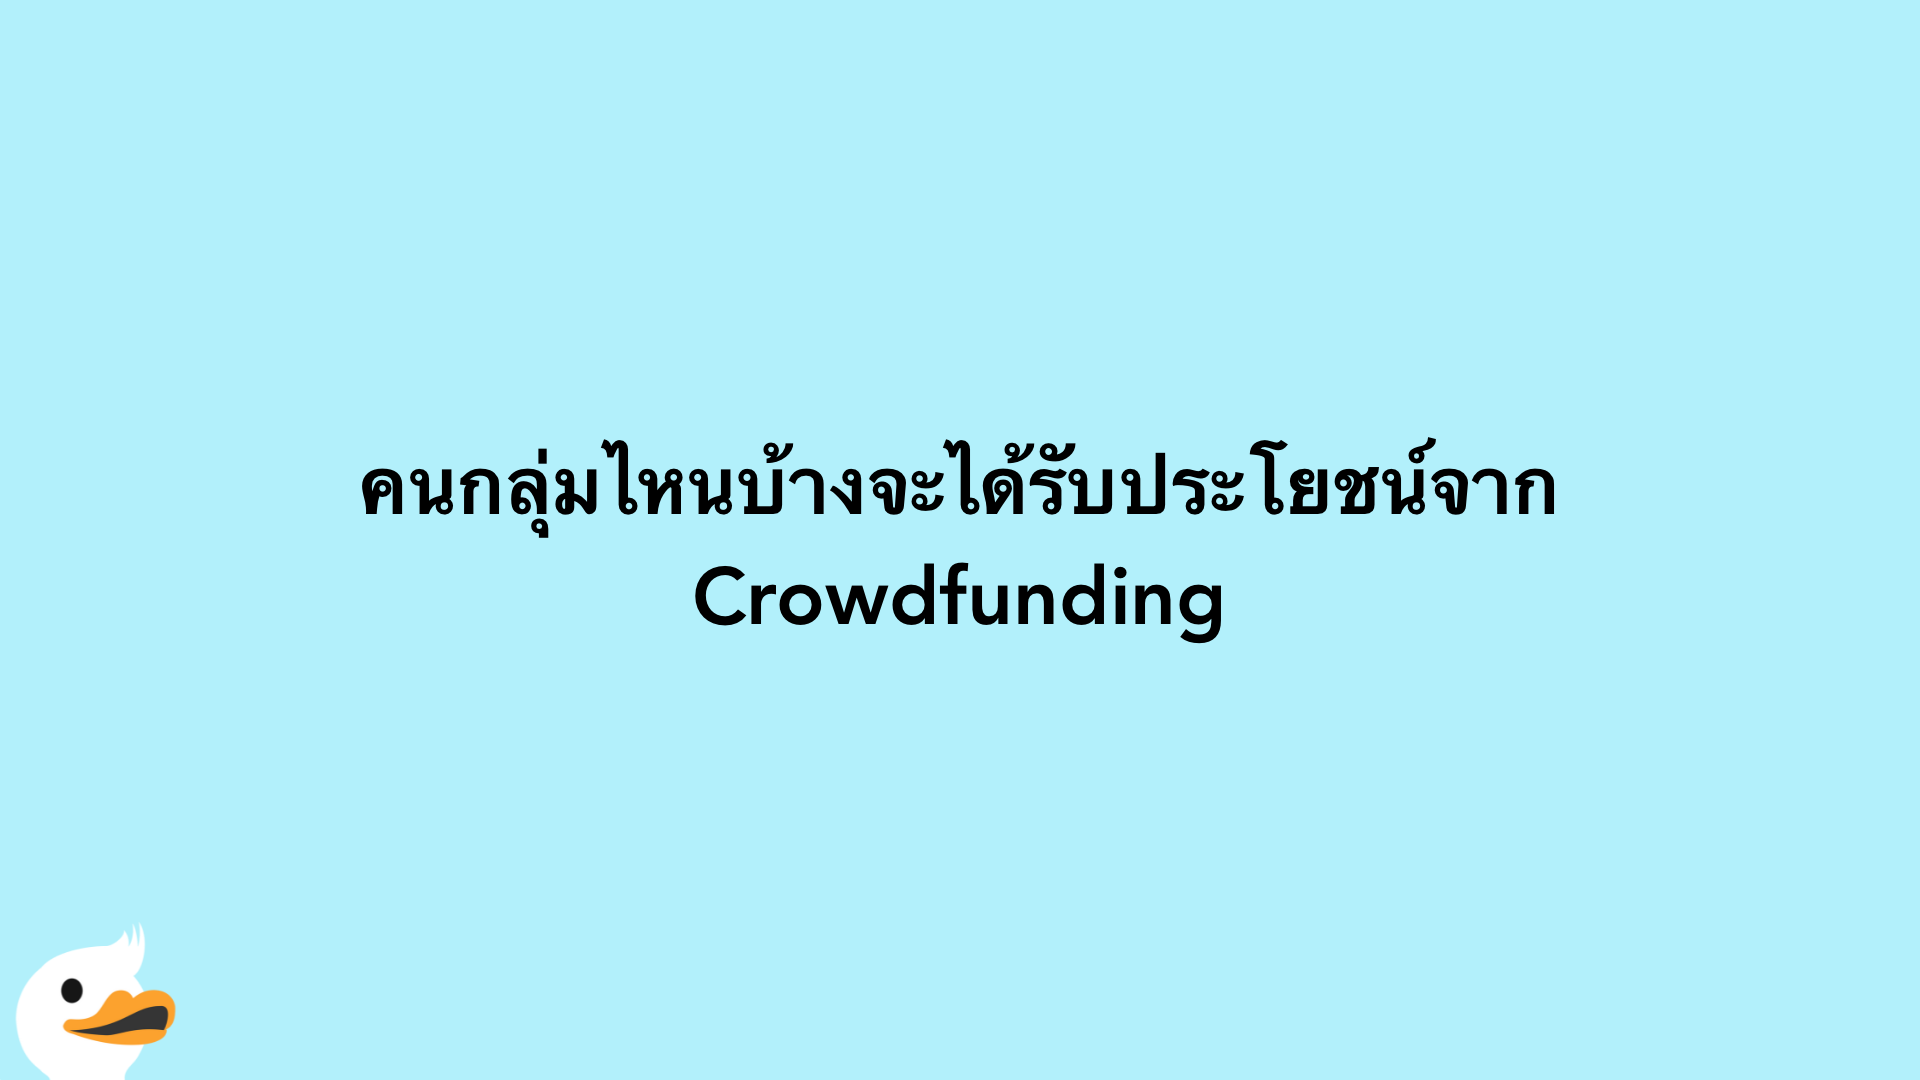 คนกลุ่มไหนบ้างจะได้รับประโยชน์จาก Crowdfunding